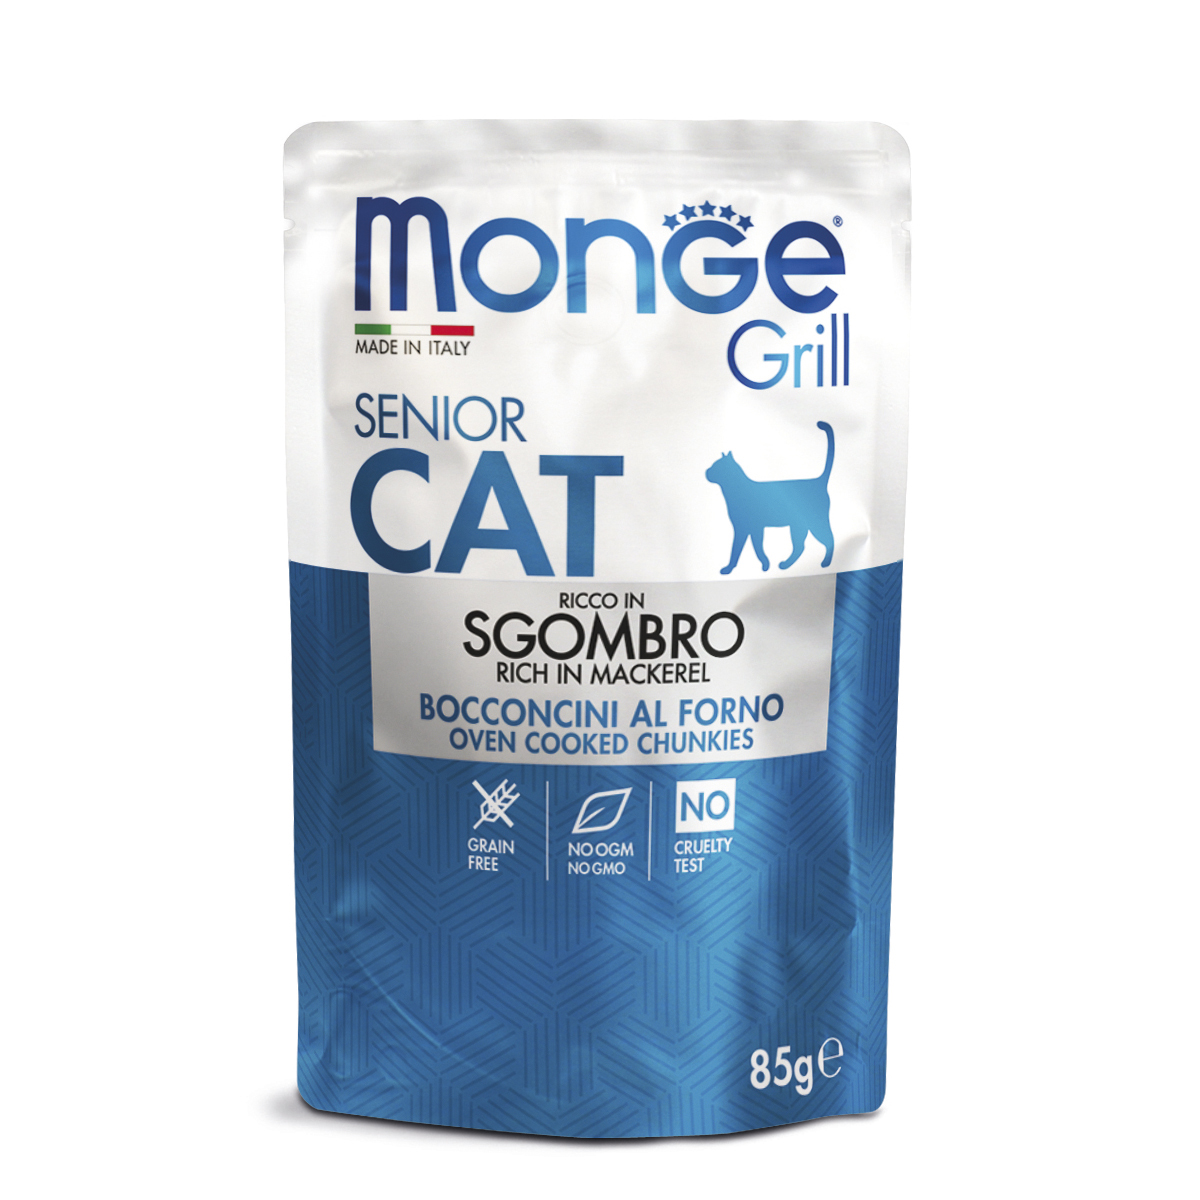 Влажный корм для кошек Monge Grill Senior, для пожилых, эквадорская макрель, от зоомагазина Дино Зоо